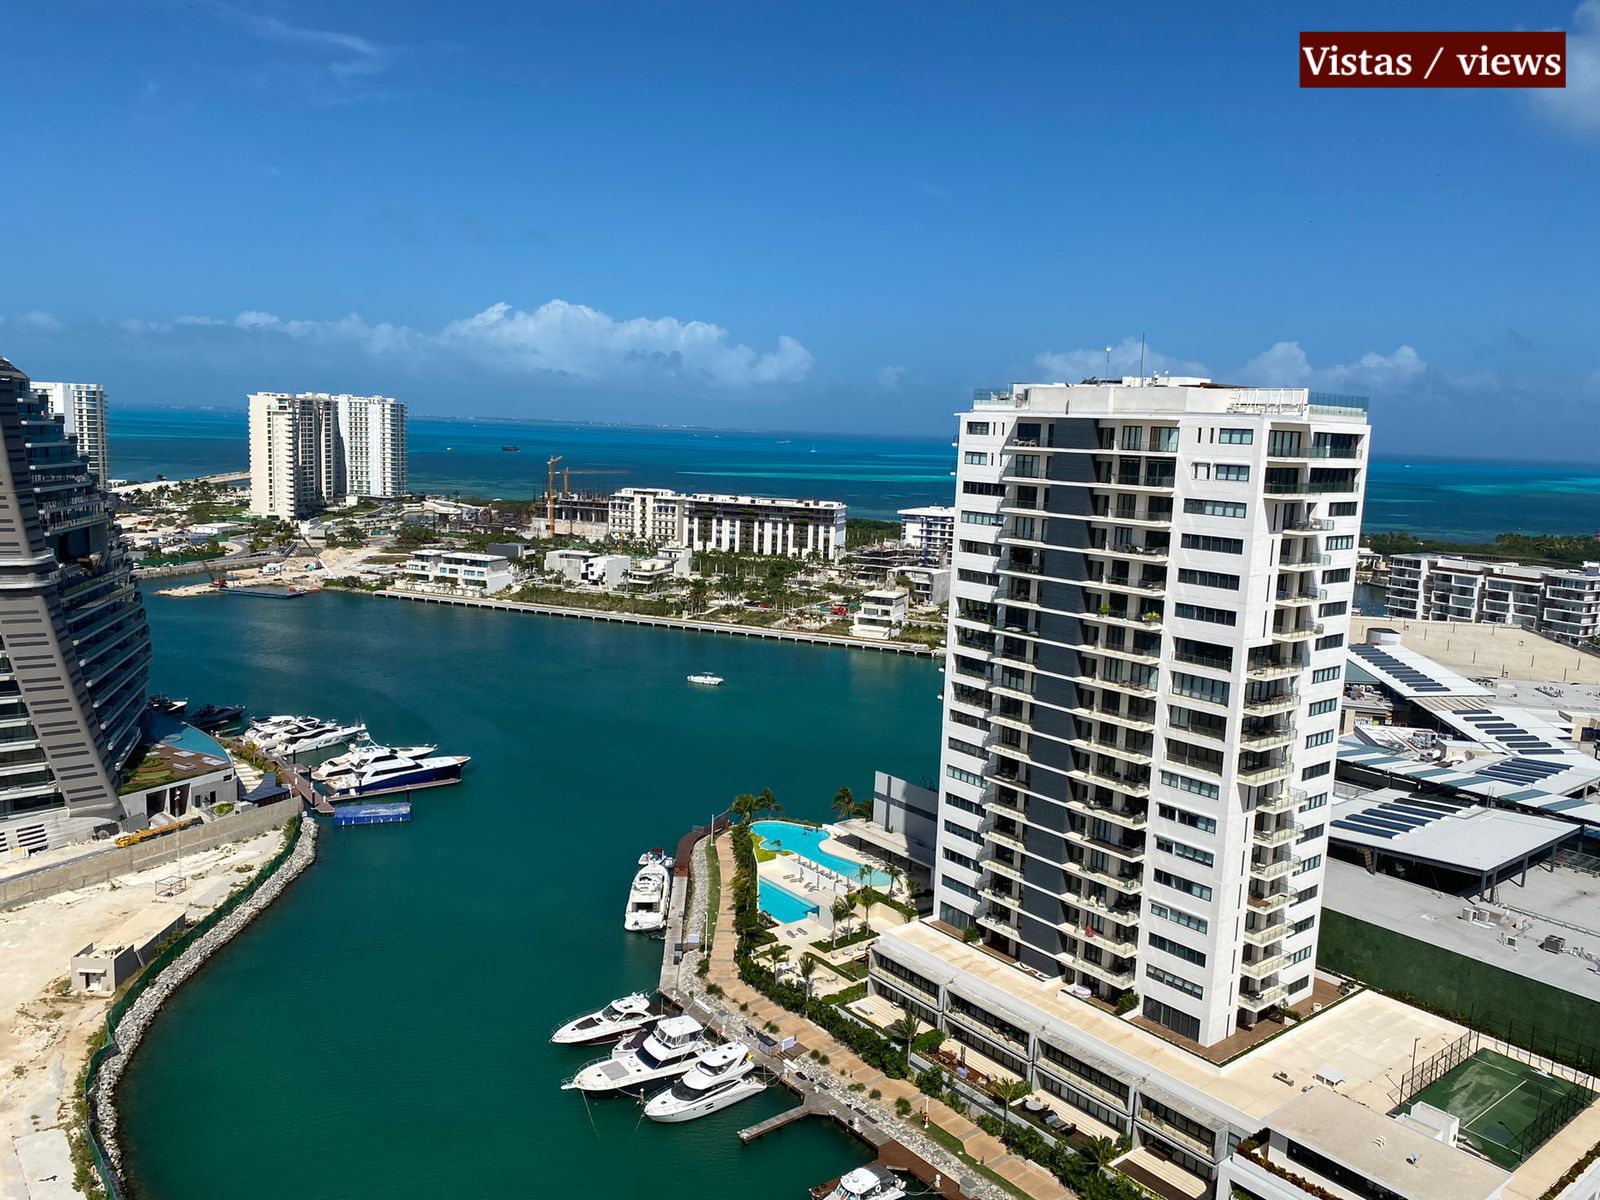 Departamento frente al mar con club de playa, terraza vista al mar, pre-construcción venta Cancun